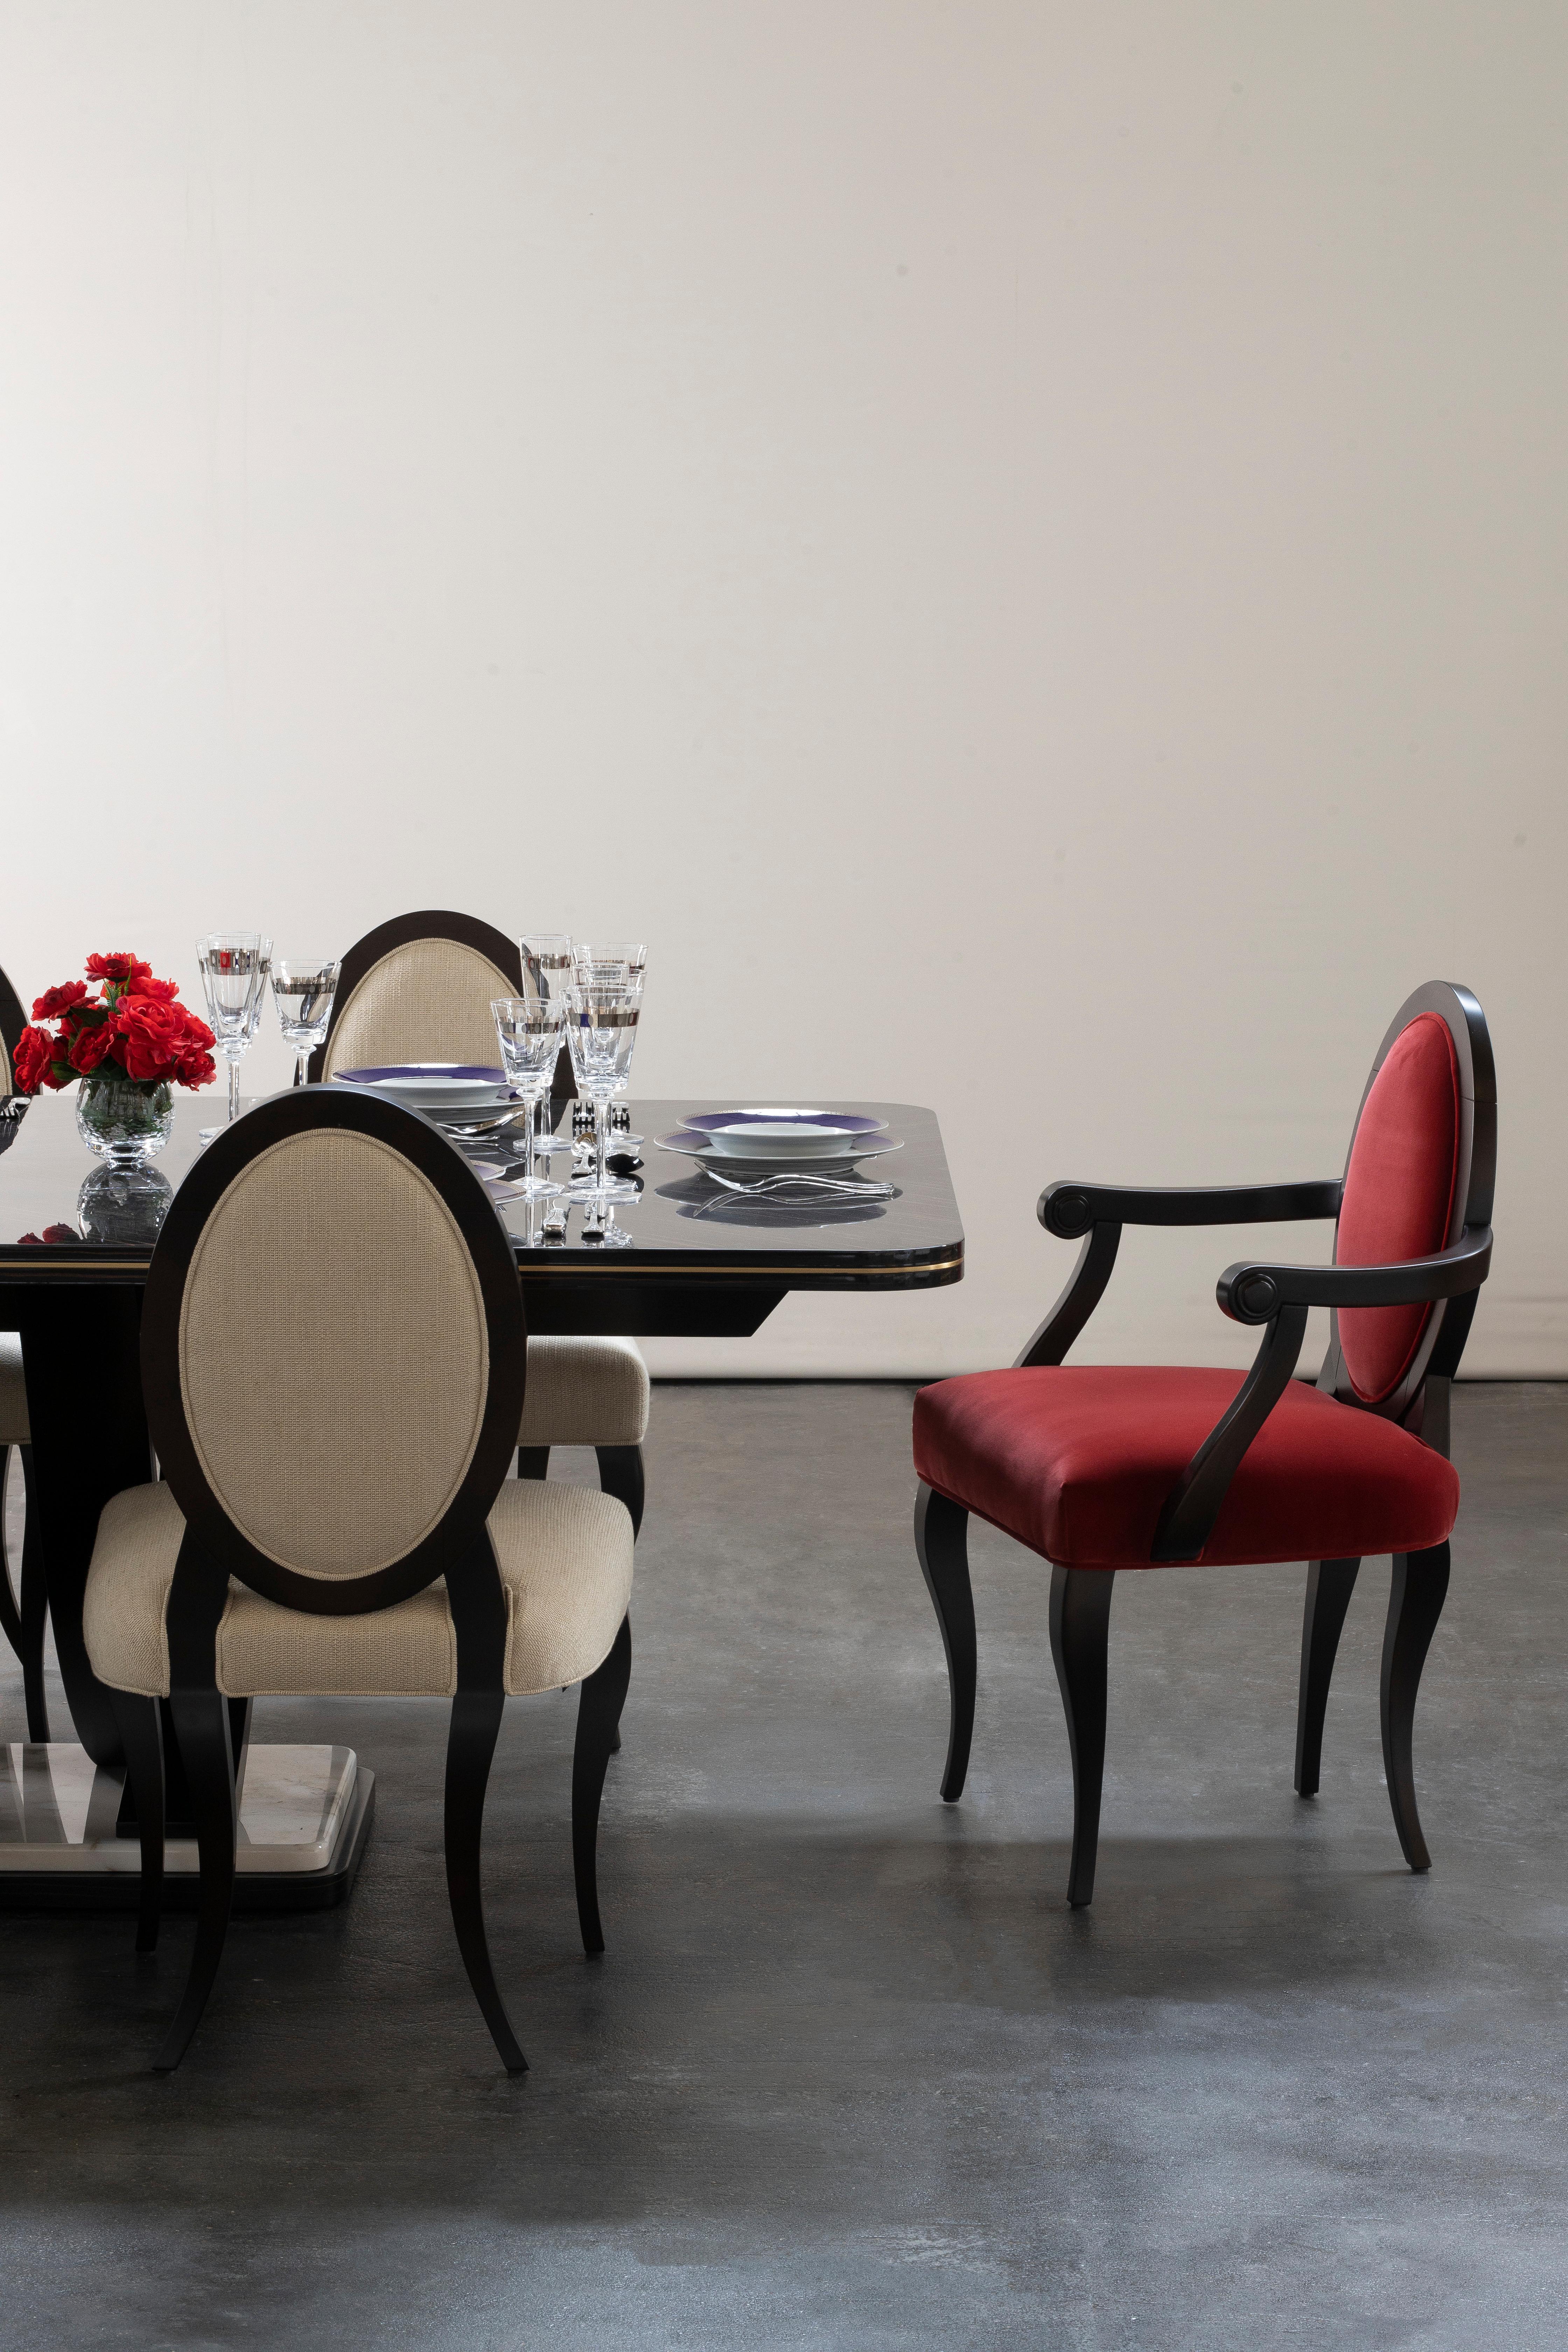 Ellipse Chair, Modern Collection'S, handgefertigt in Portugal - Europa von GF Modern.

Der Ellipse-Stuhl ist ein klassisches und bequemes Möbelstück für jede Gelegenheit. Die harmonische Kombination zwischen dem roten Baumwollsamt und der